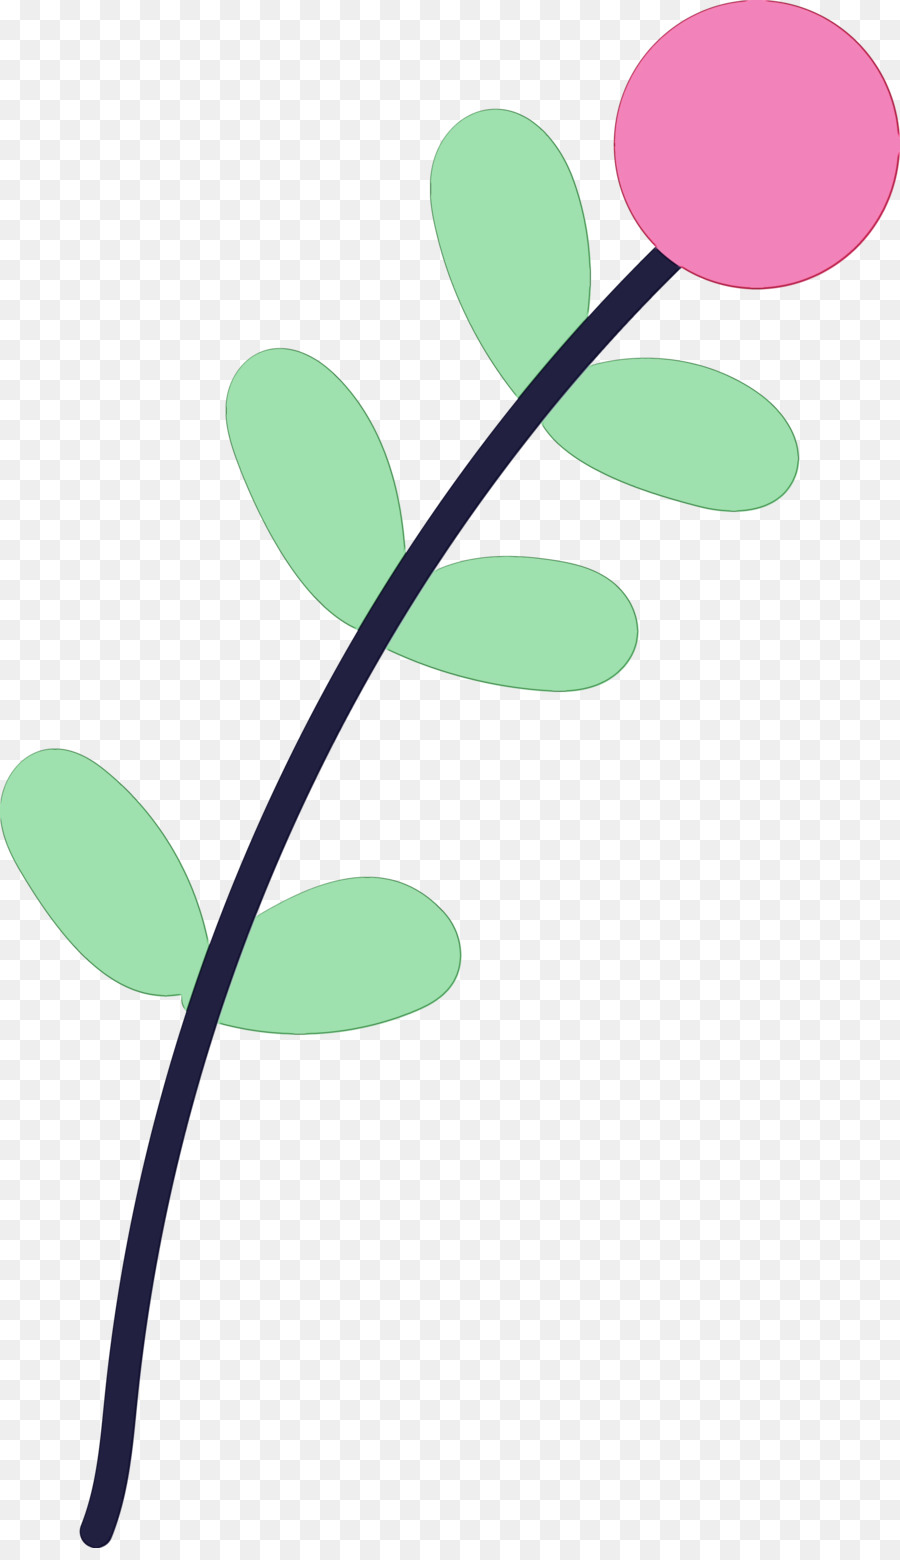 leaf plant stem green flower line